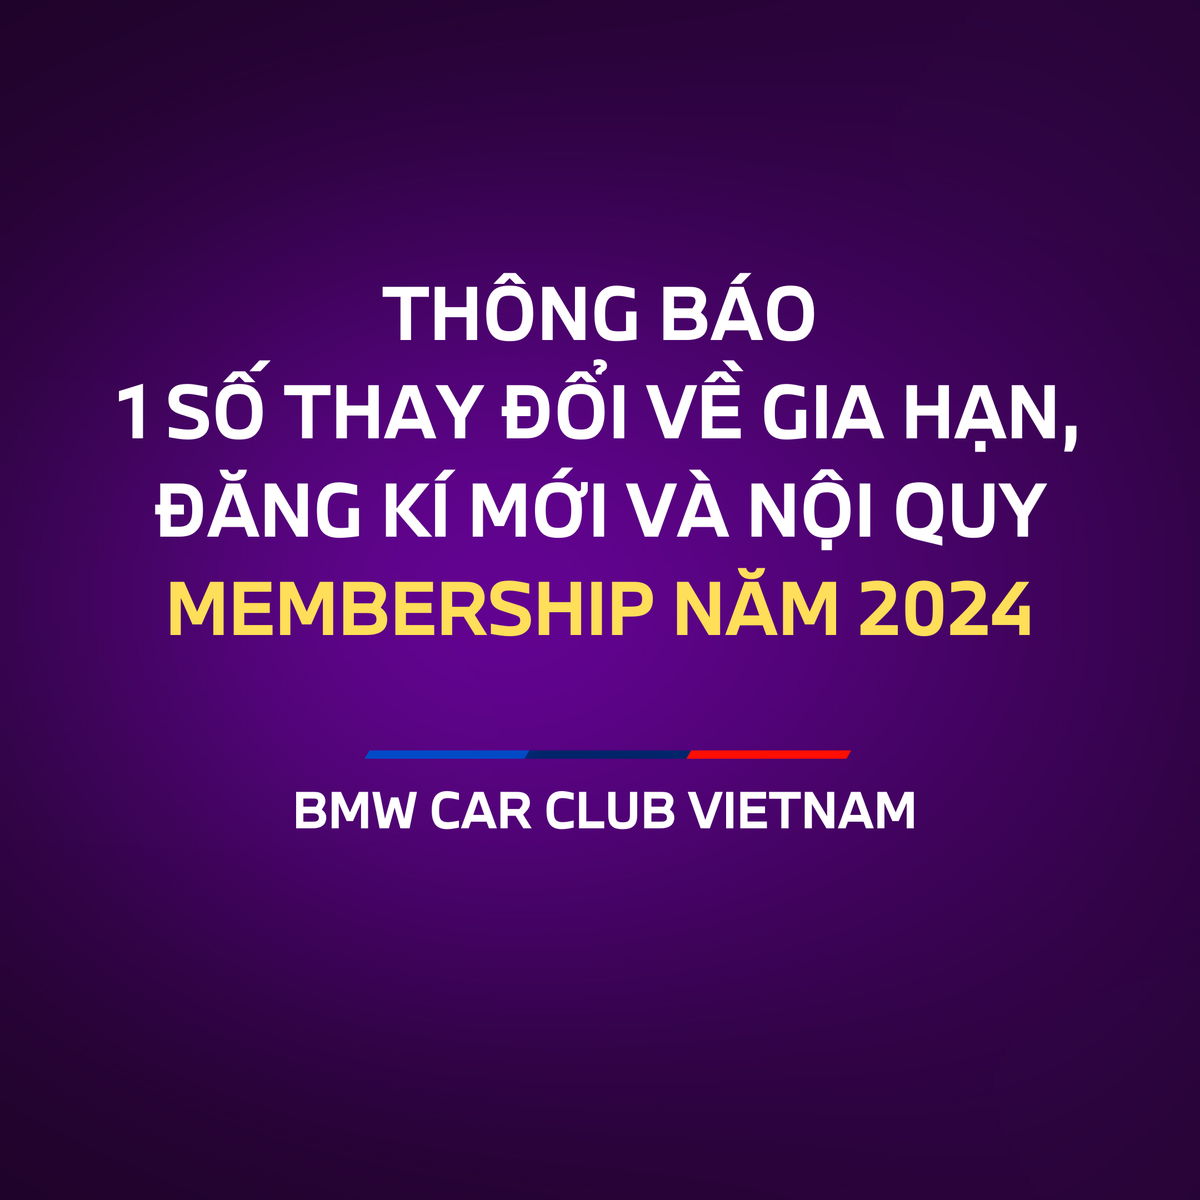 Thông báo về gia hạn Membership của BMWCCV năm 2024, kèm theo 1 số thay đổi về nội quy của Club